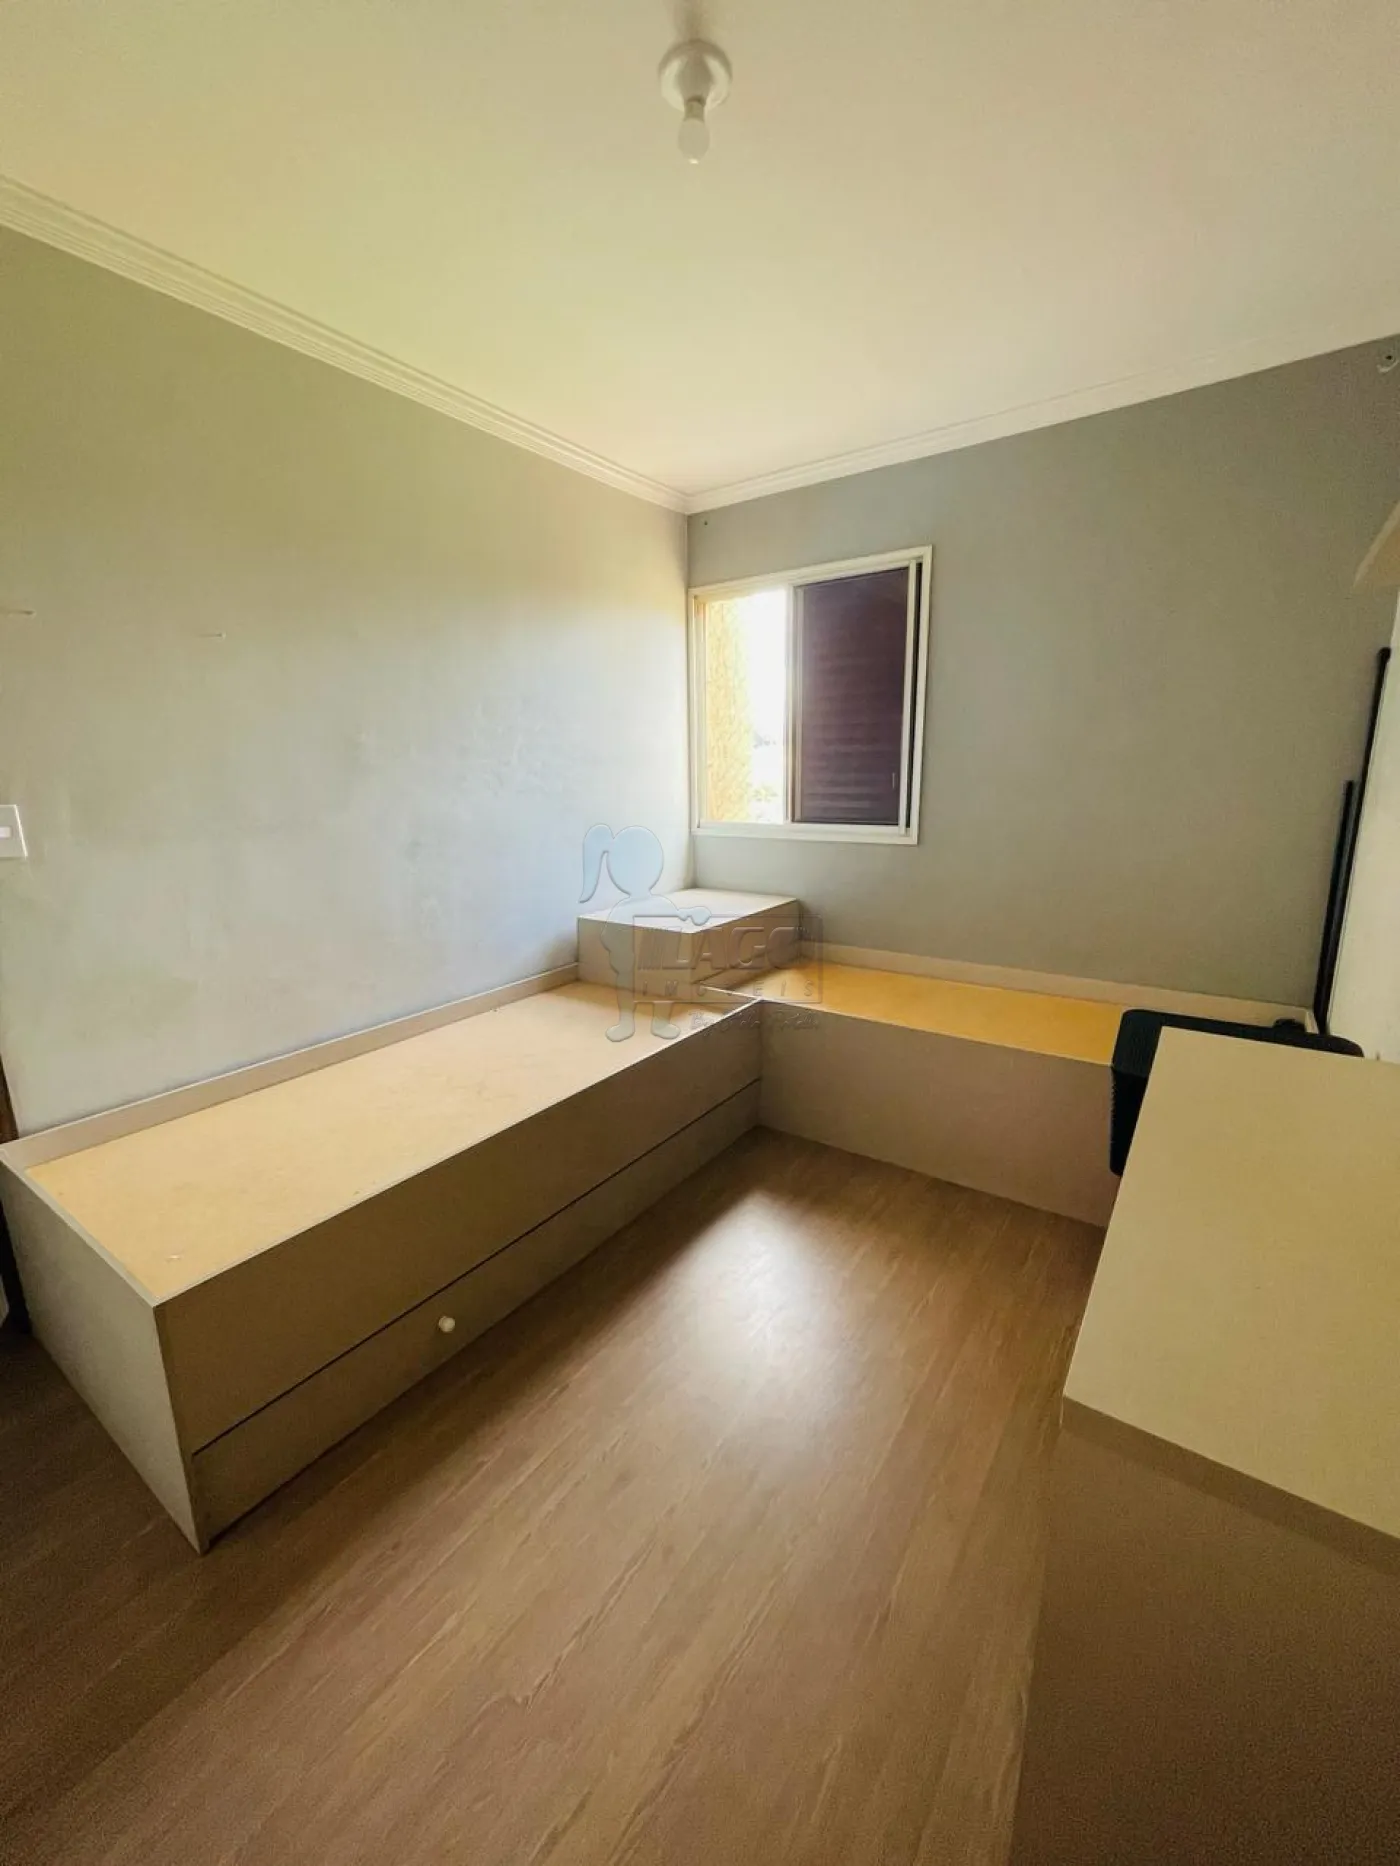 Alugar Apartamentos / Padrão em Ribeirão Preto R$ 100,00 - Foto 17